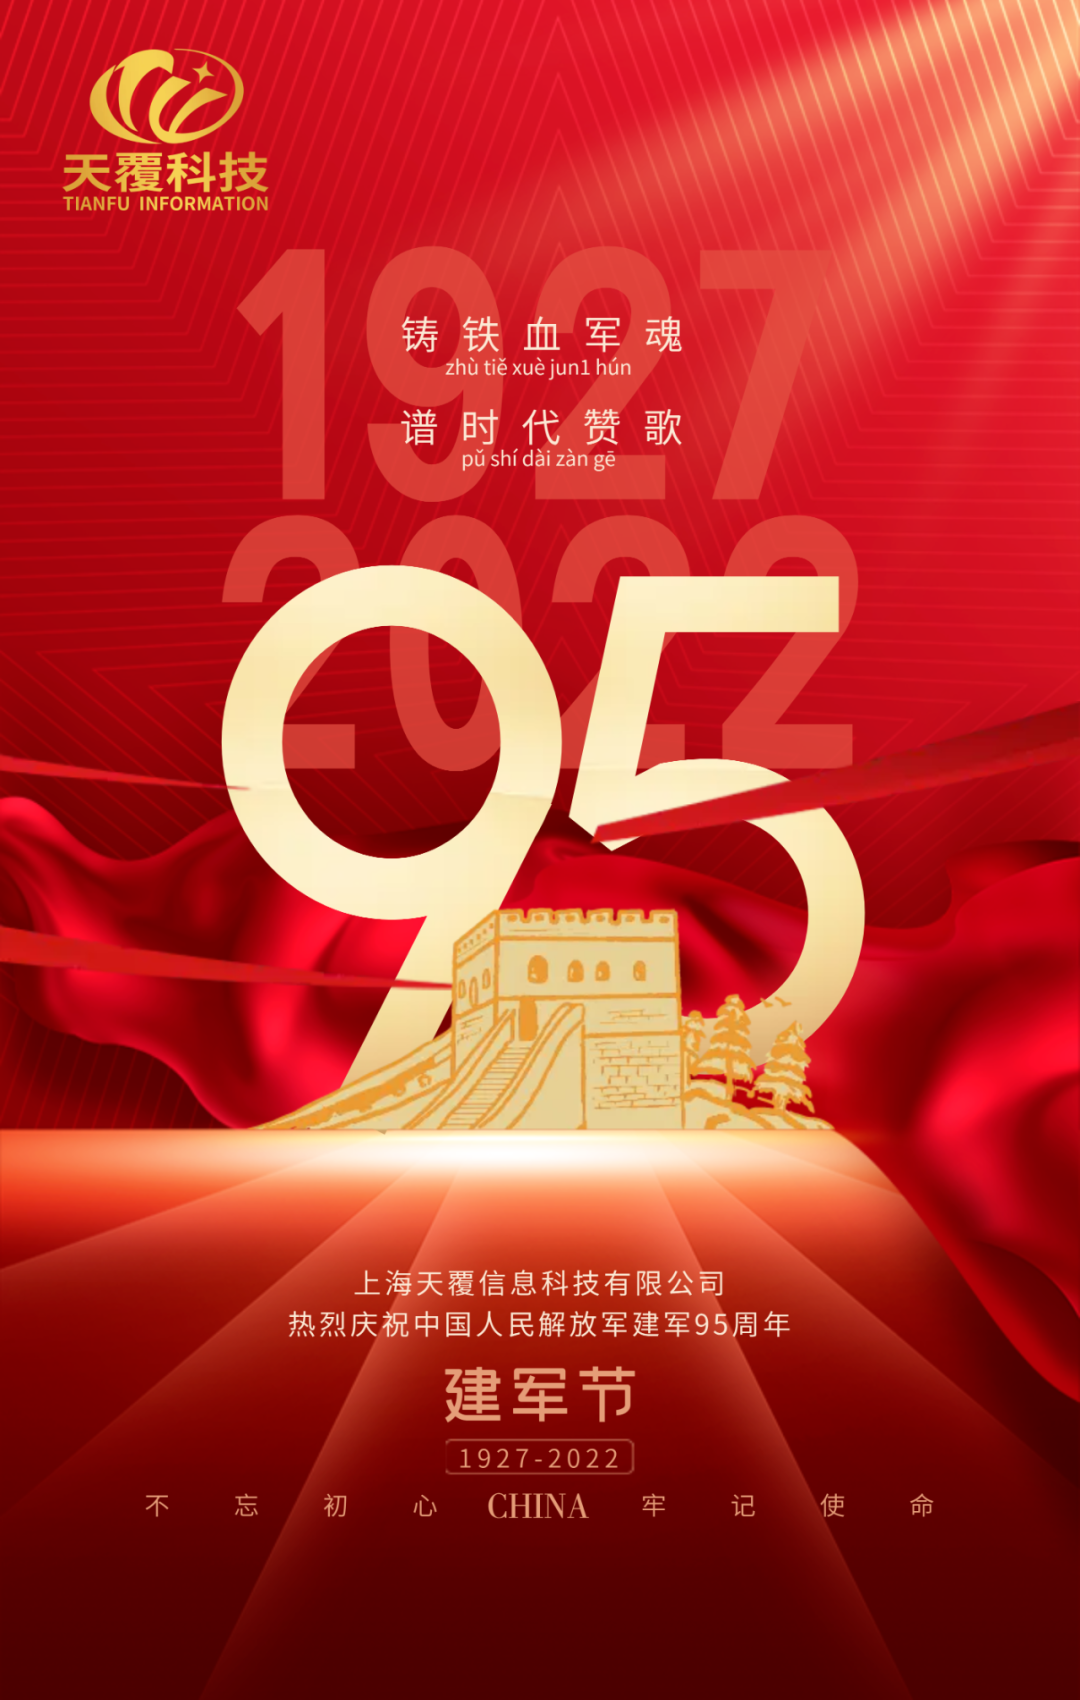 光辉历程 永垂不朽 | 热烈庆祝中国人民解放军建军95周年